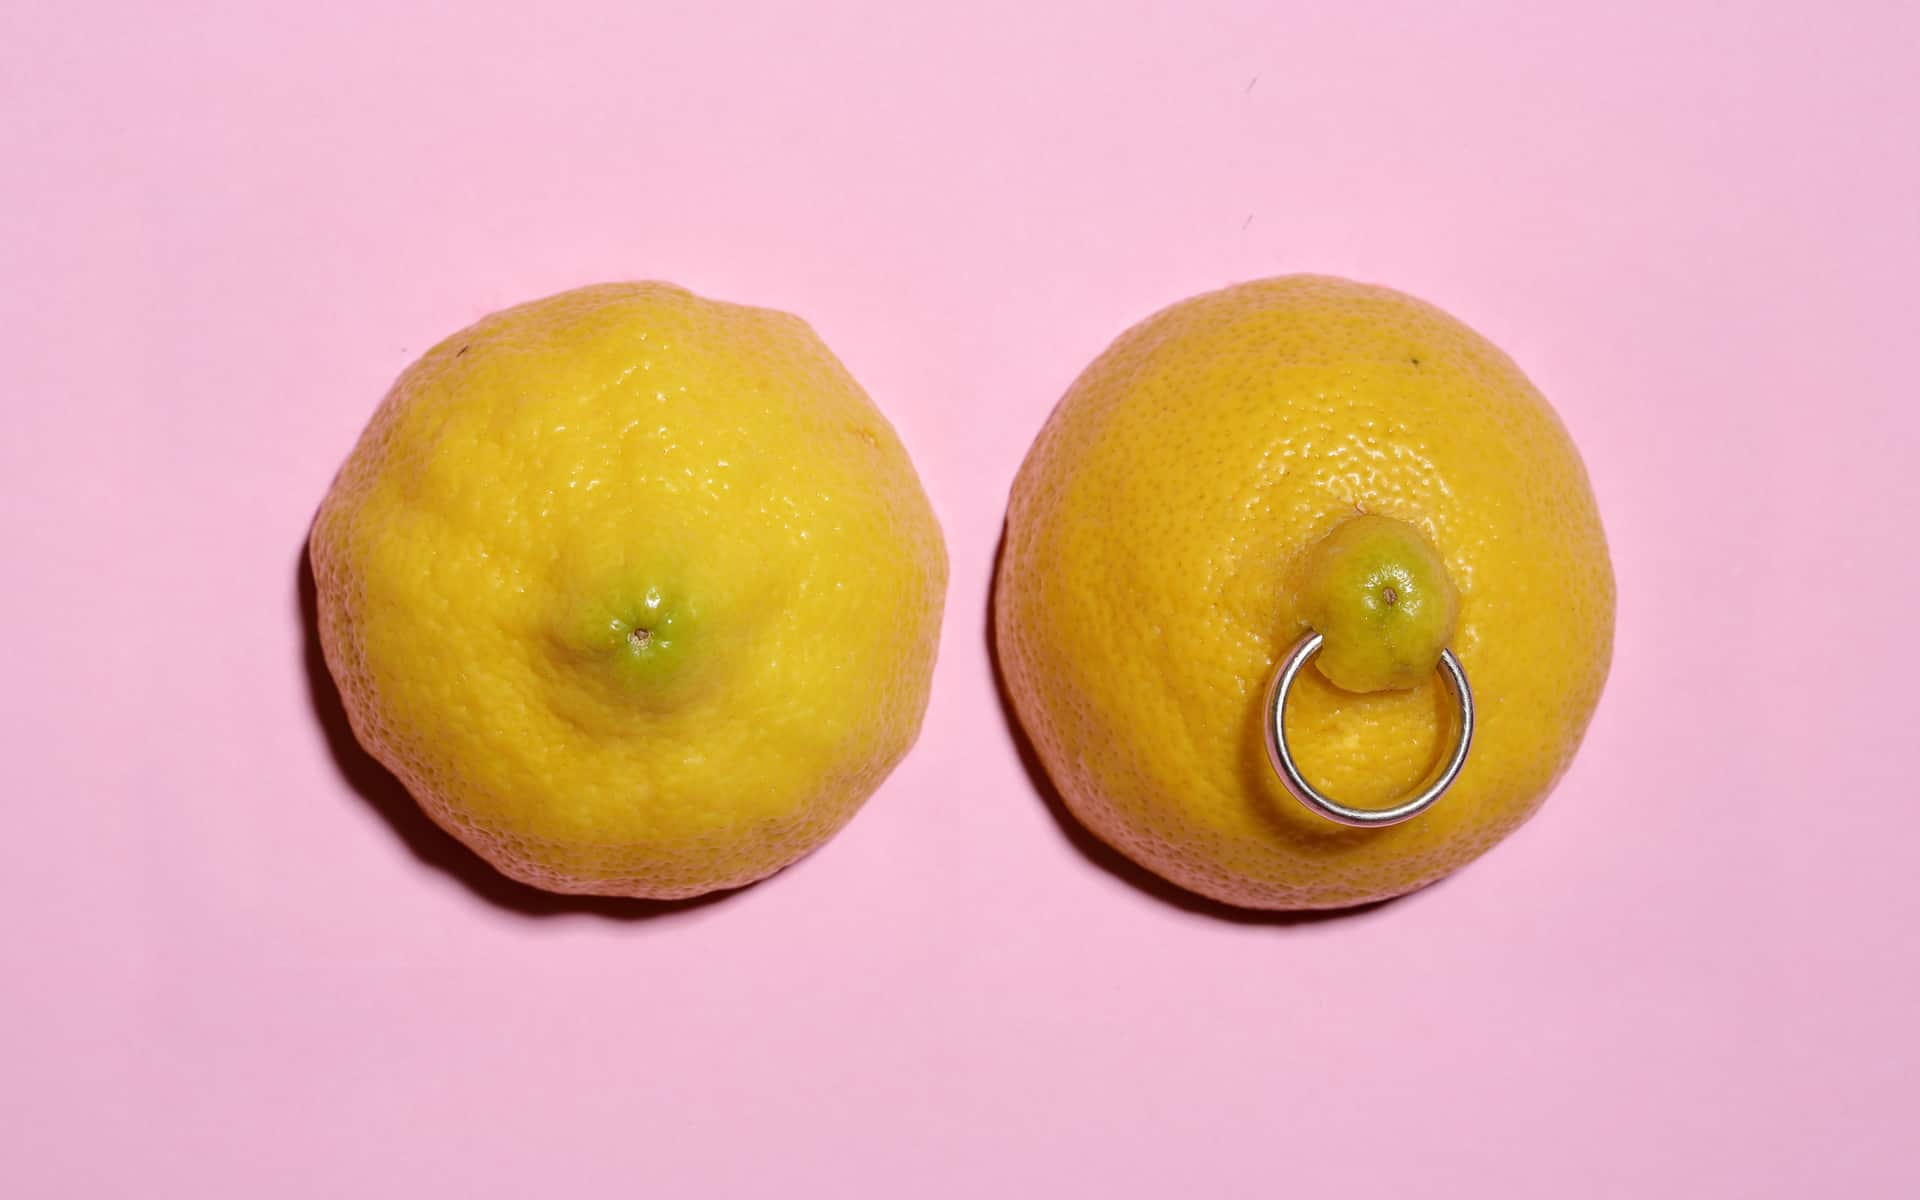 dos mitades de limón con perforación de anillo sobre fondo rosa pastel